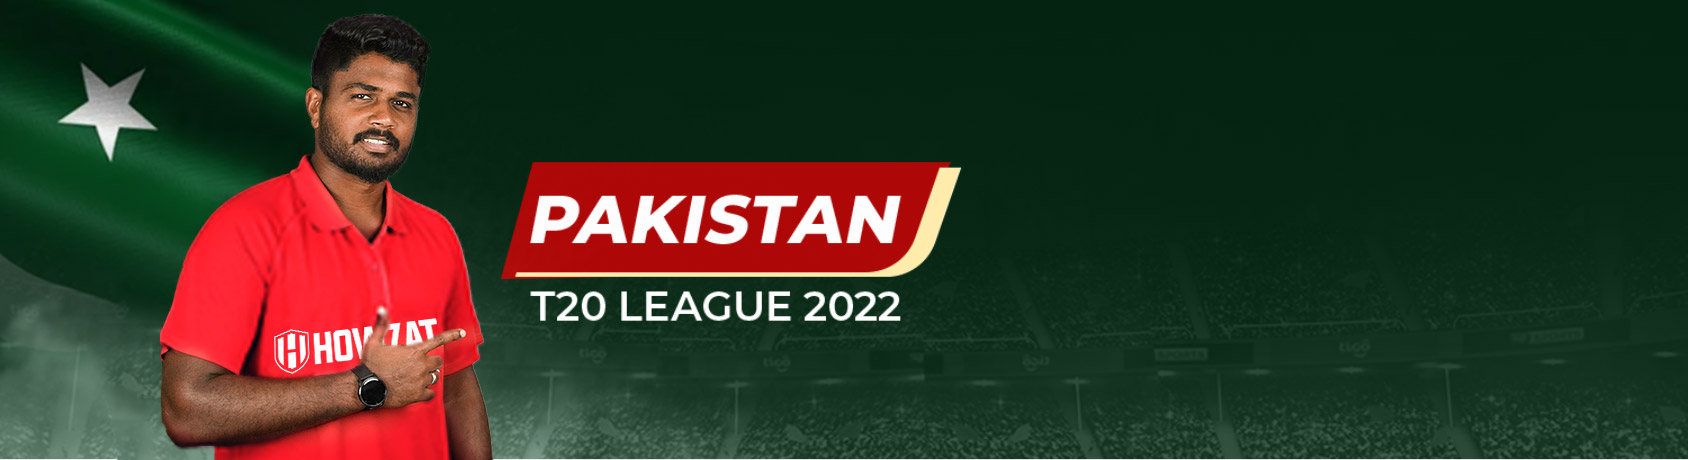 Pakistan T20 League